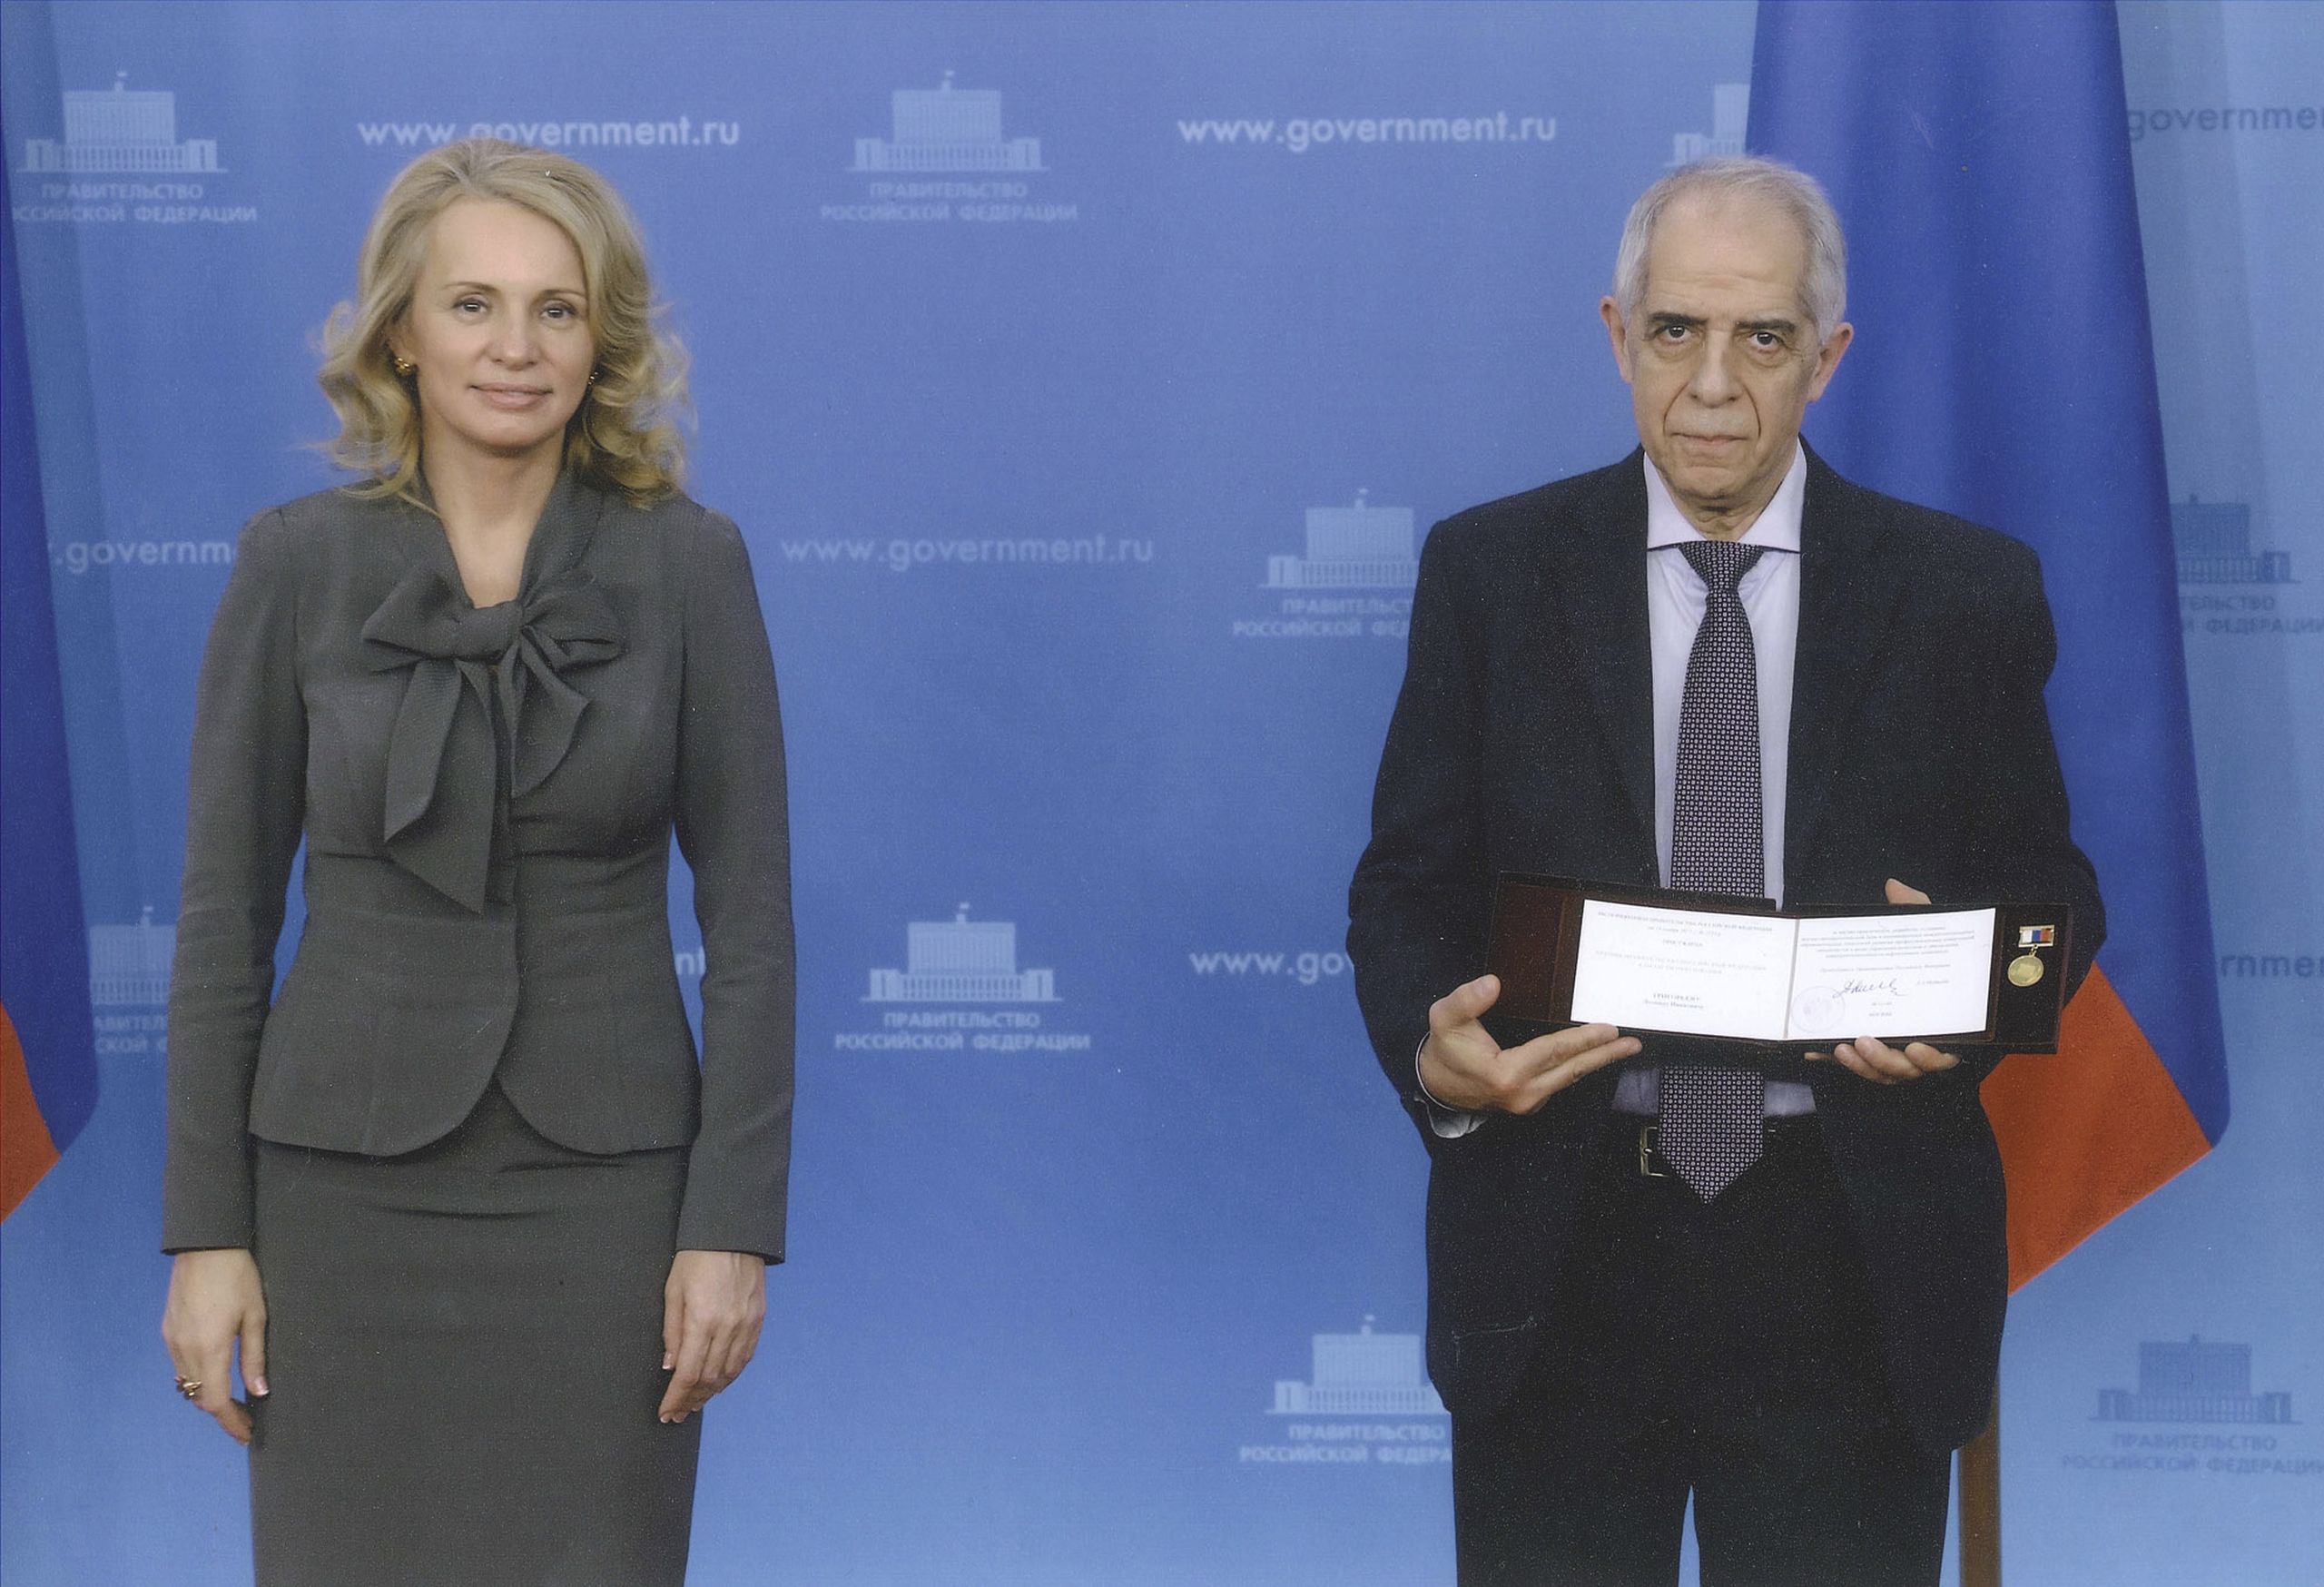 Вручение премии Правительства Российской Федерации 2015 года в области образования